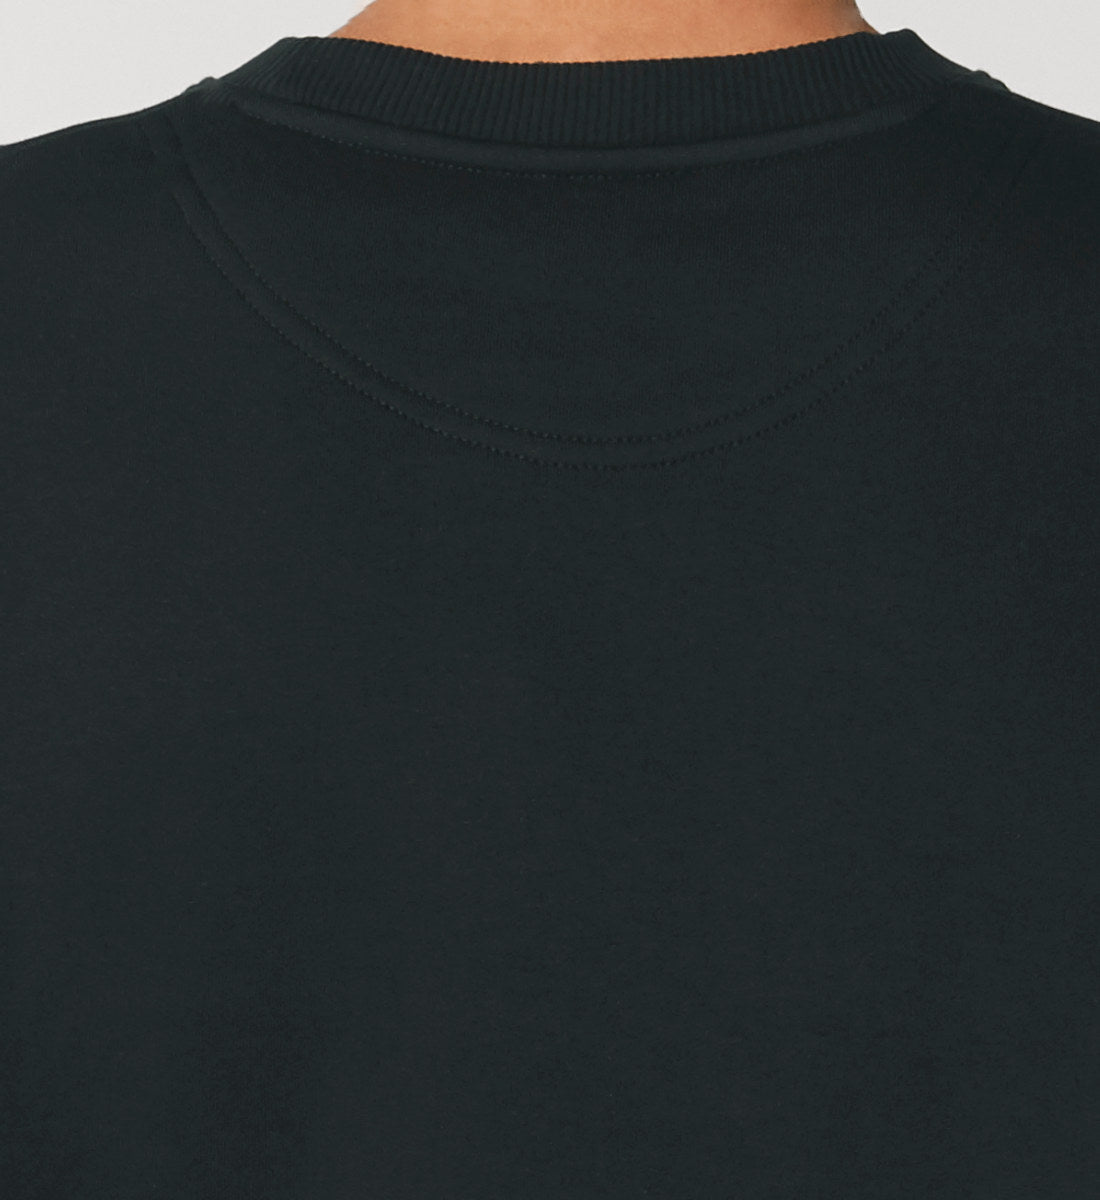 Schwarzes Sweatshirt Unisex für Frauen und Männer bedruckt mit dem Design der Roger Rockawoo Kollektion mountainbike downhill freeride shredding Culture Community